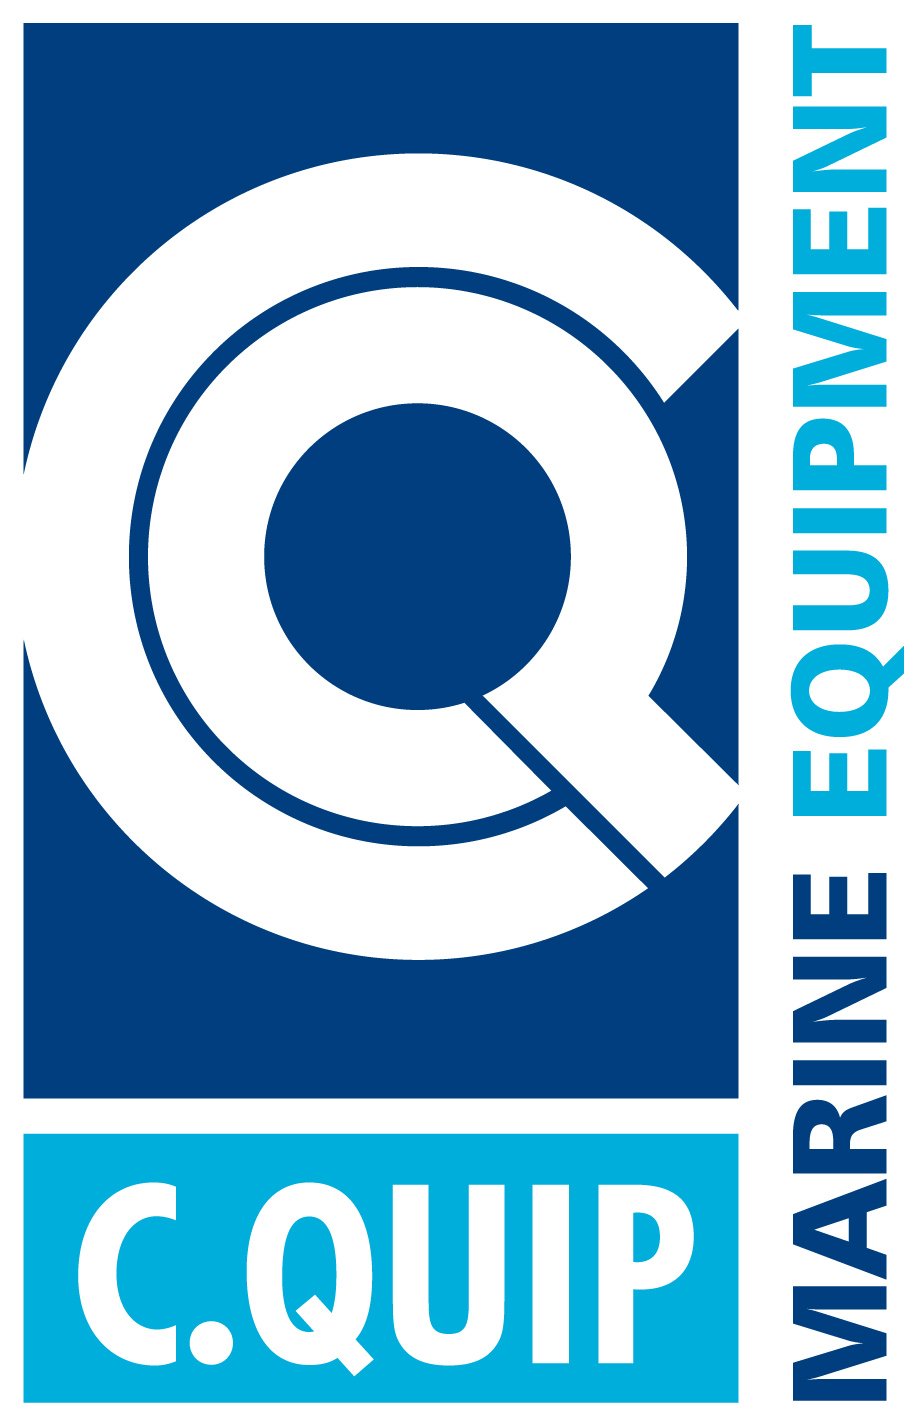 Cquip's logo.